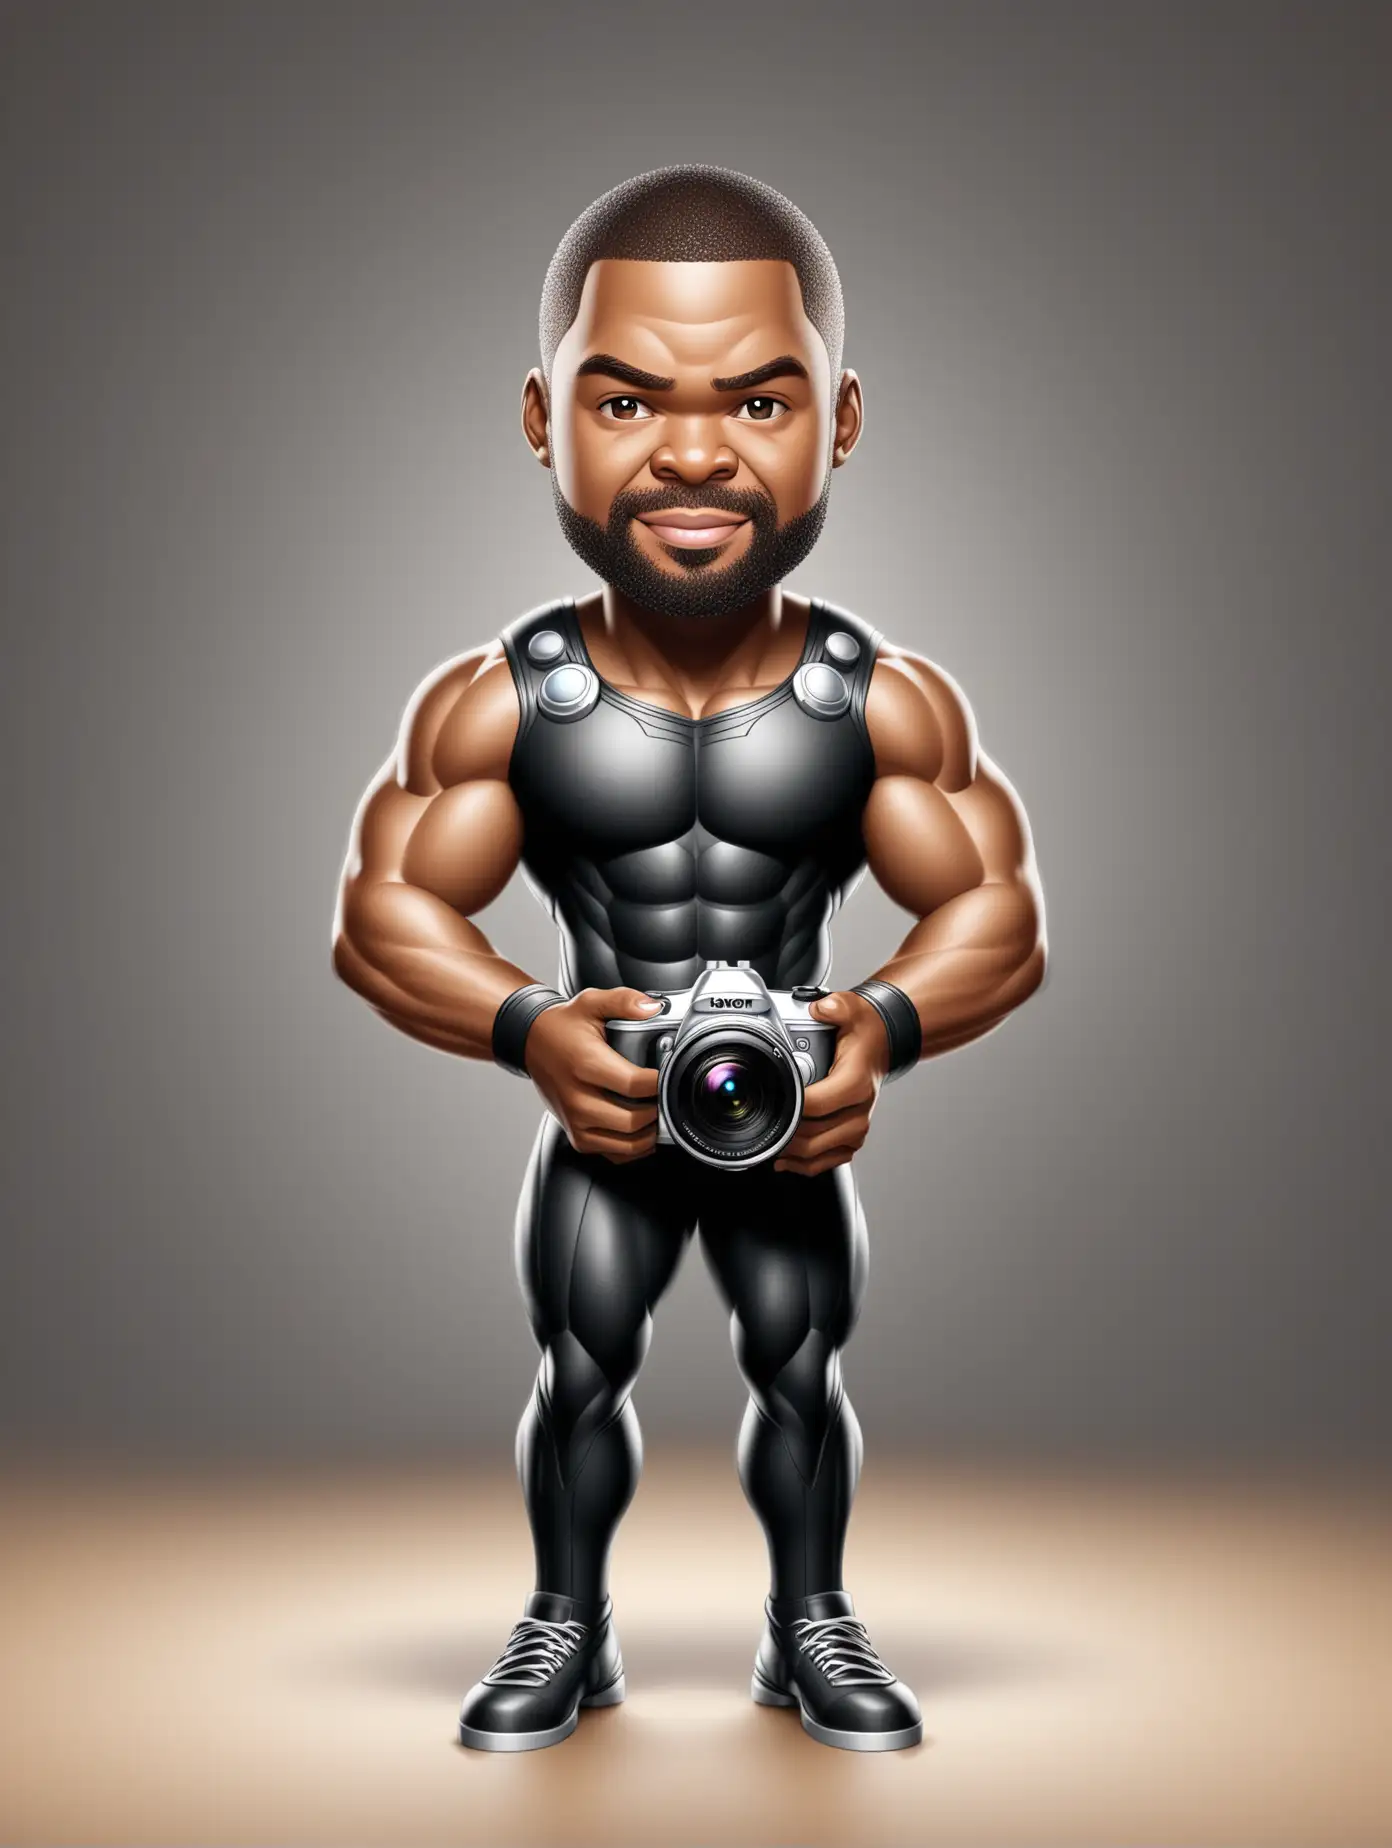 3D Caricature Portrait of Black Man as Thor